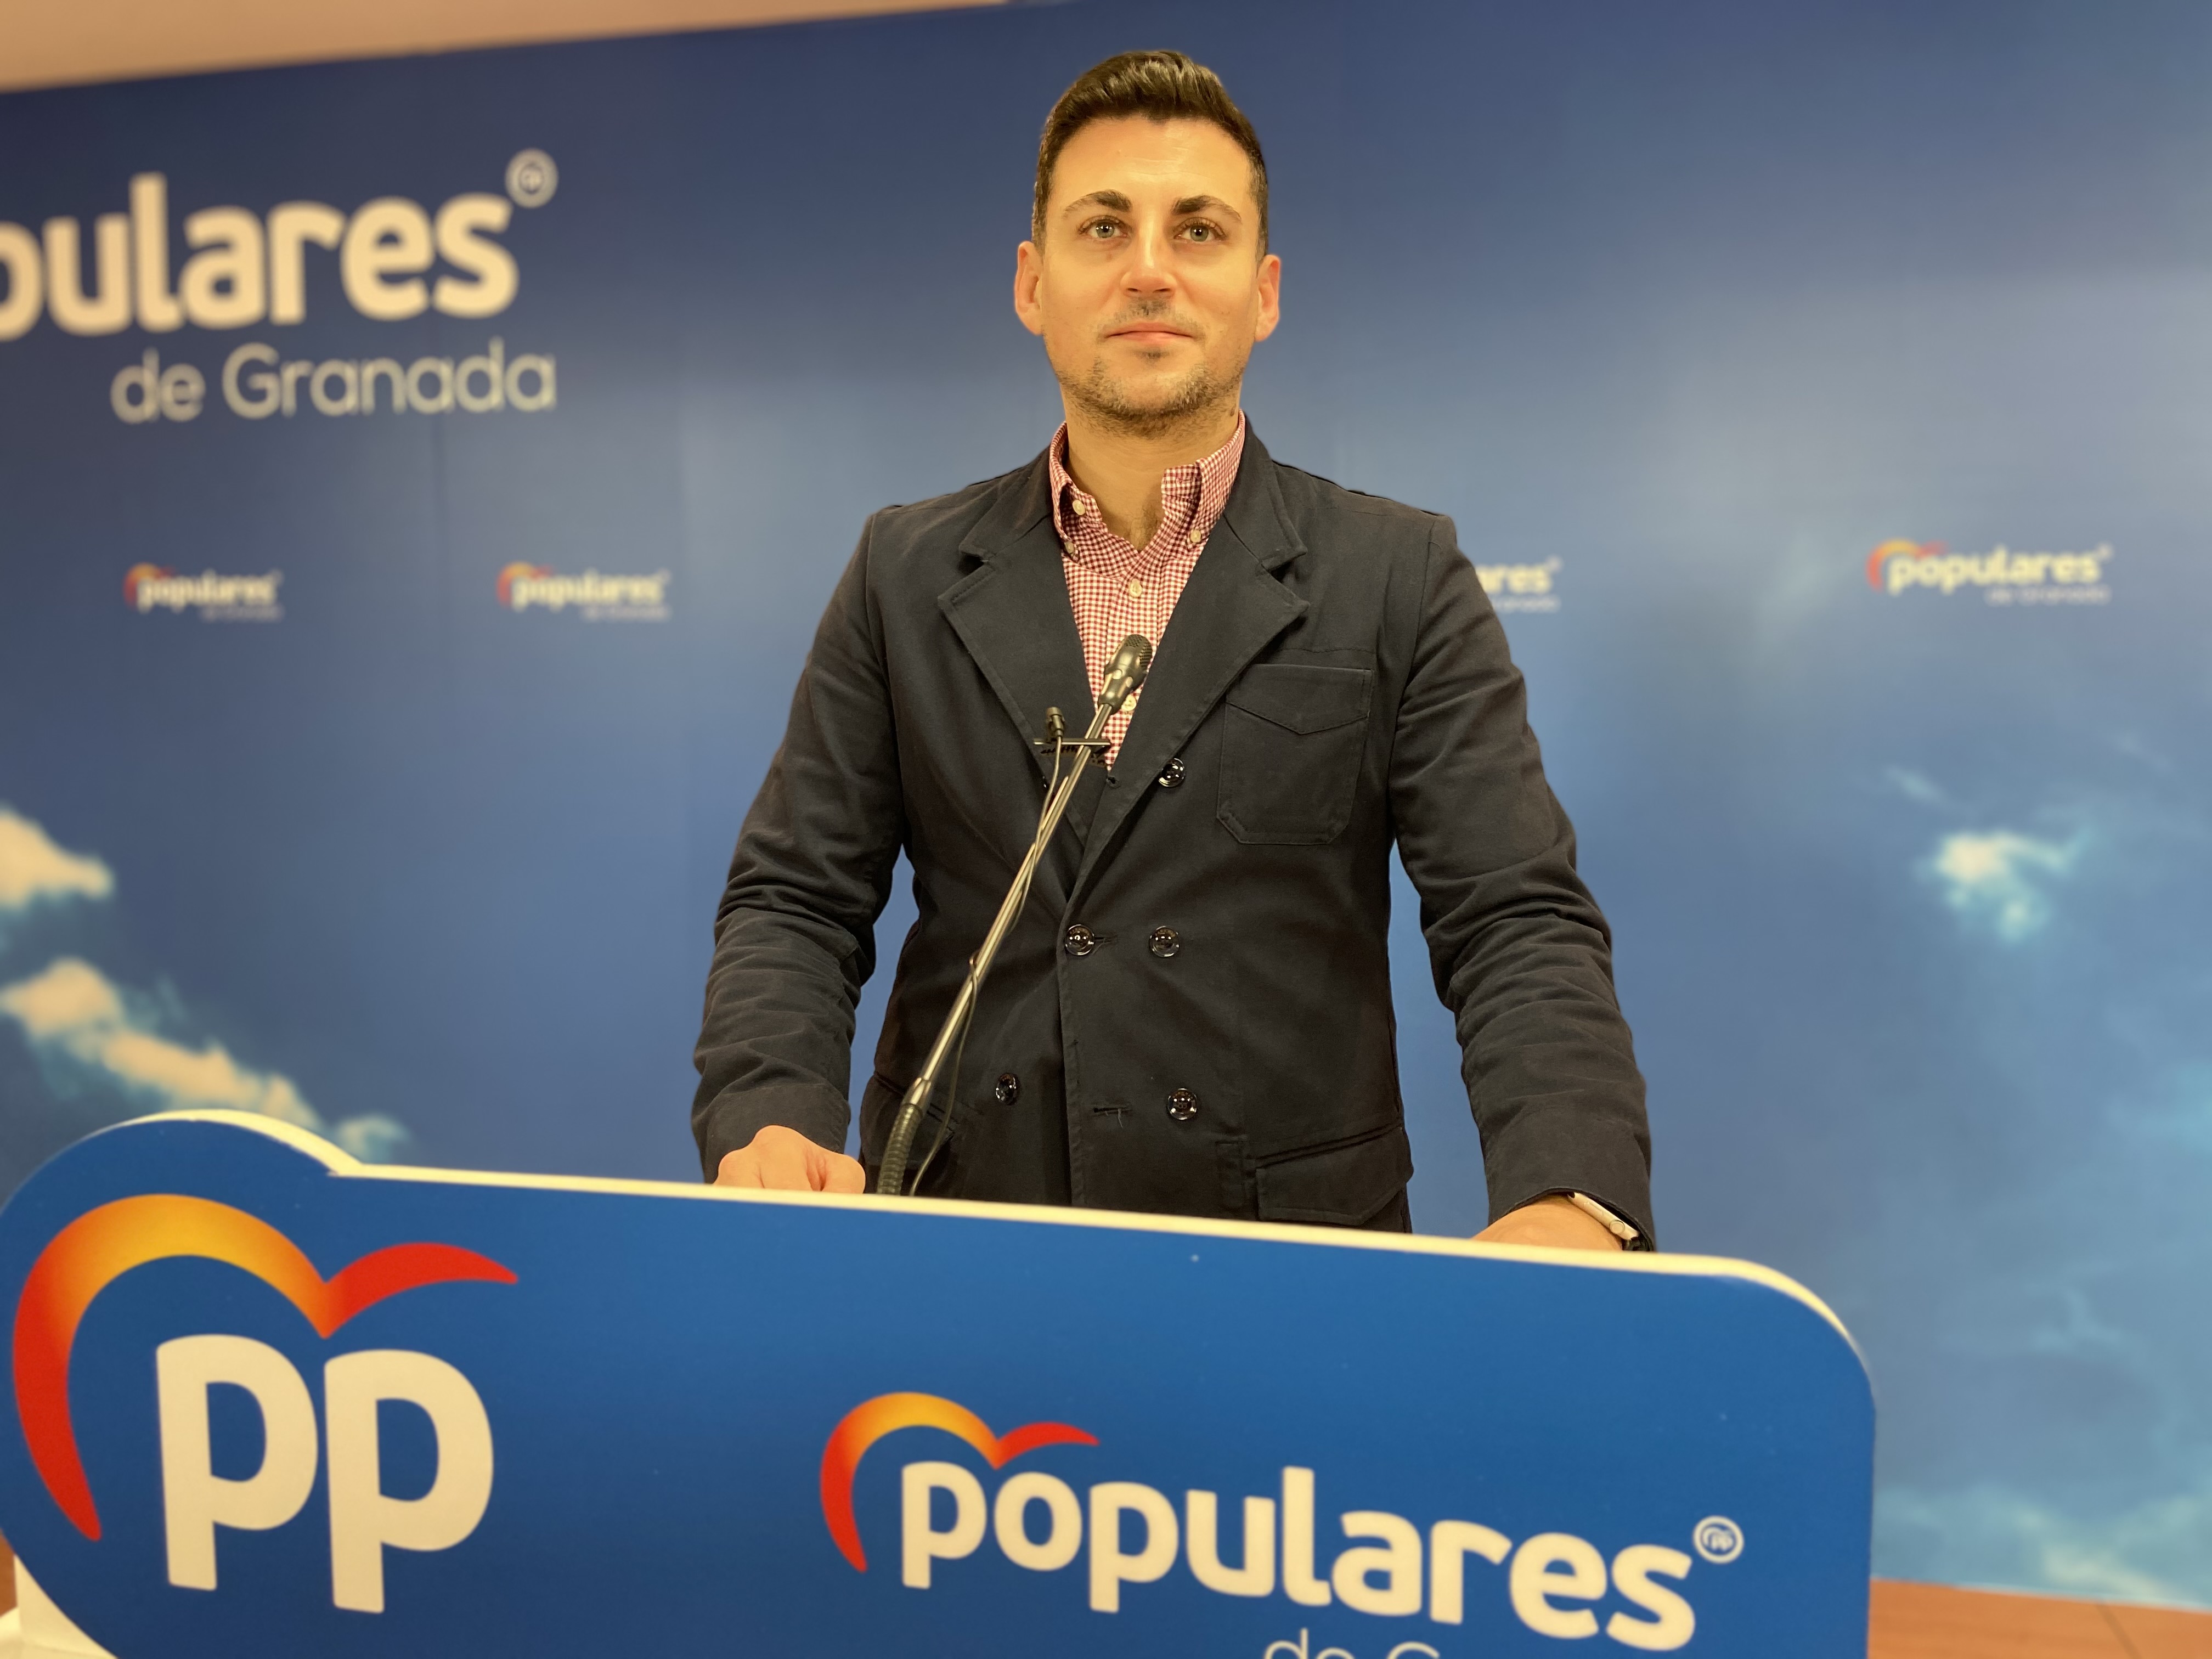 El PP reitera su rechazo a la Ley Celaá y seguirá actuando contra las «imposiciones ideológicas del PSOE»